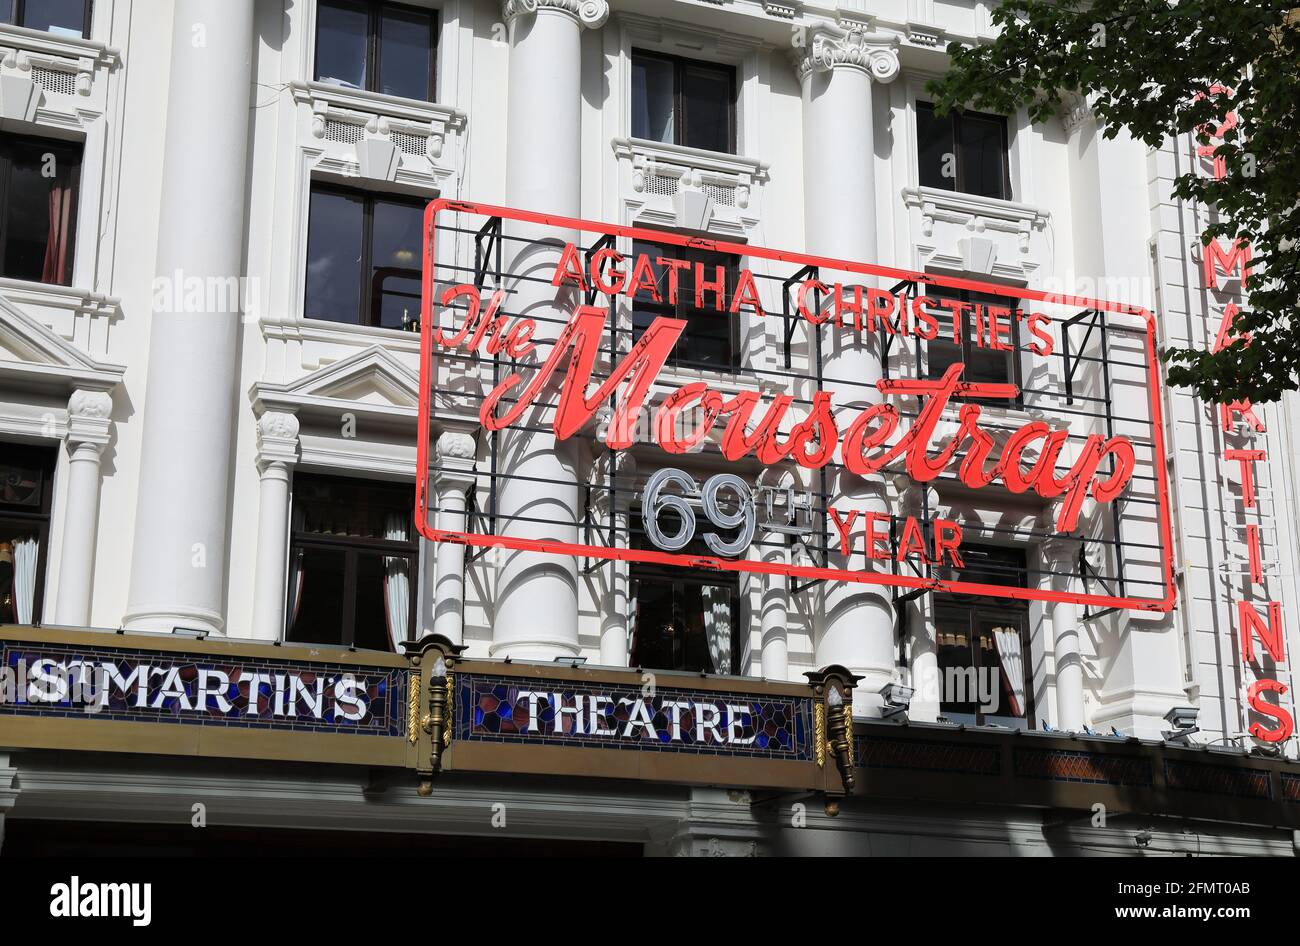 Agatha Christie's The Mousetrap, au St Martin's Theatre, le plus long spectacle au monde, il est maintenant en 69e année, qui rouvrira le 17 mai, Londres, Royaume-Uni Banque D'Images